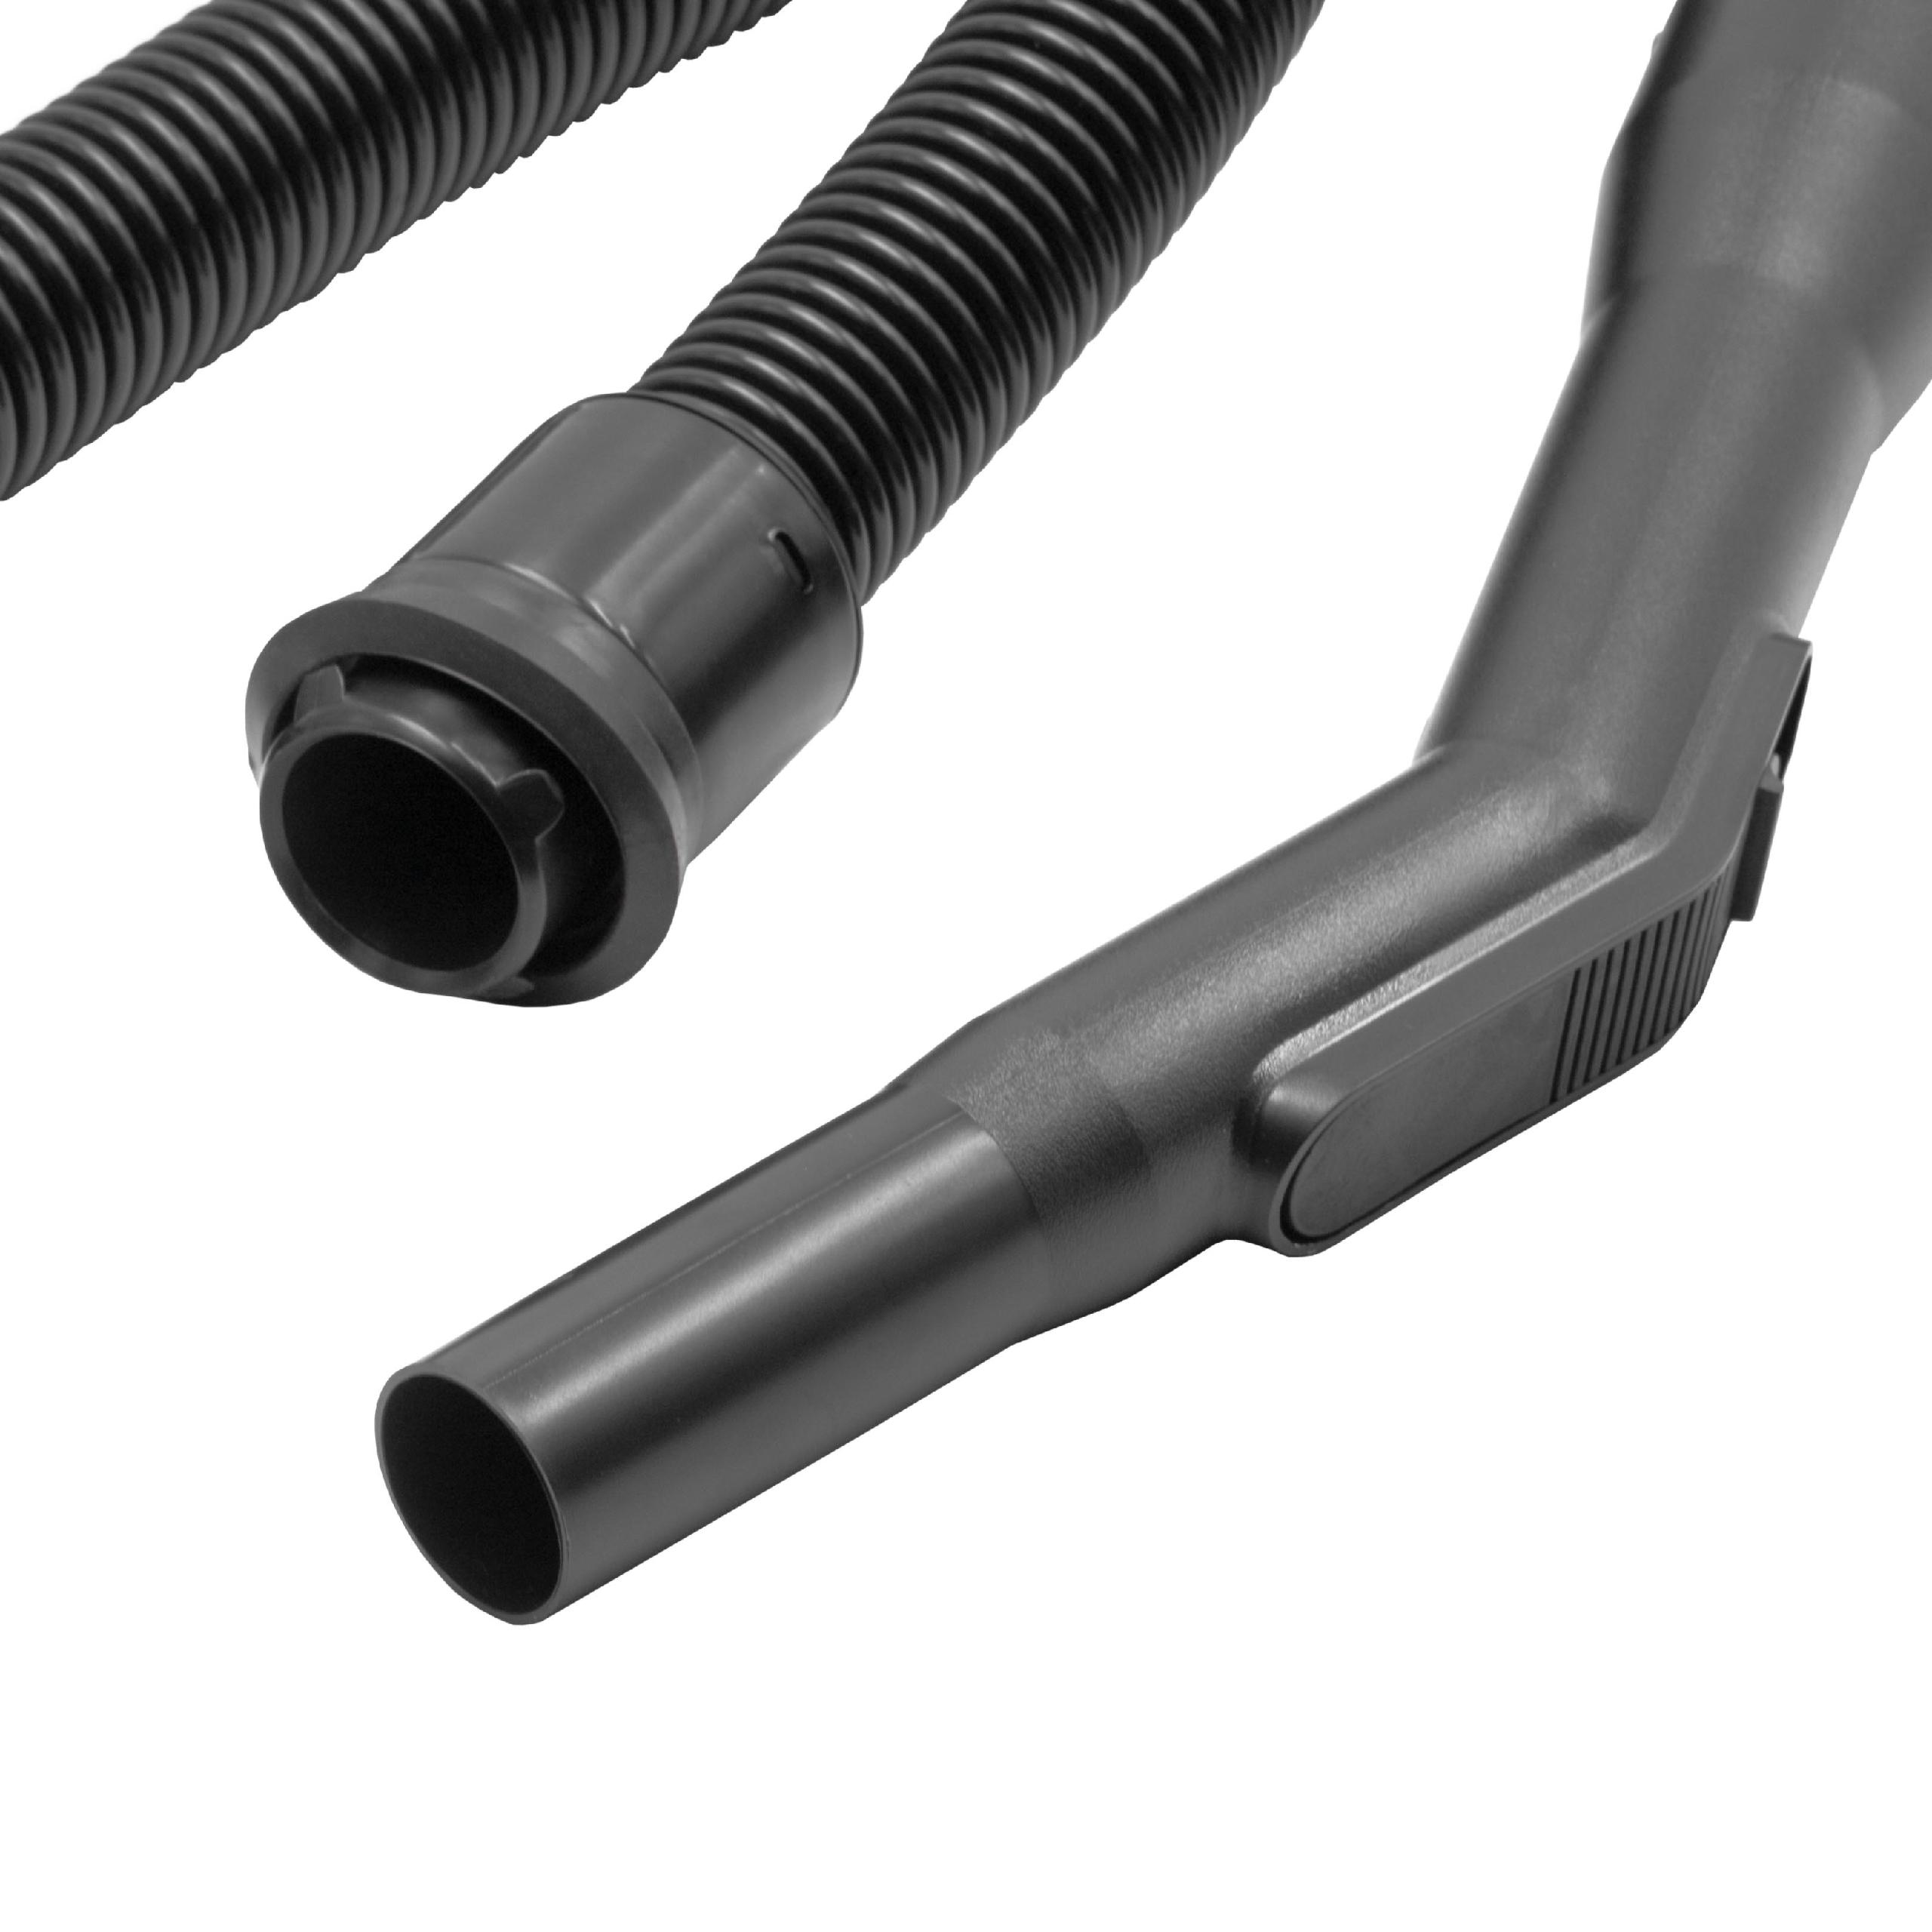 Tubo flessibile per aspiratore Electrolux, Nilfisk D 711 - 213 cm (+ manico), per ⌀ accordo di 32 mm